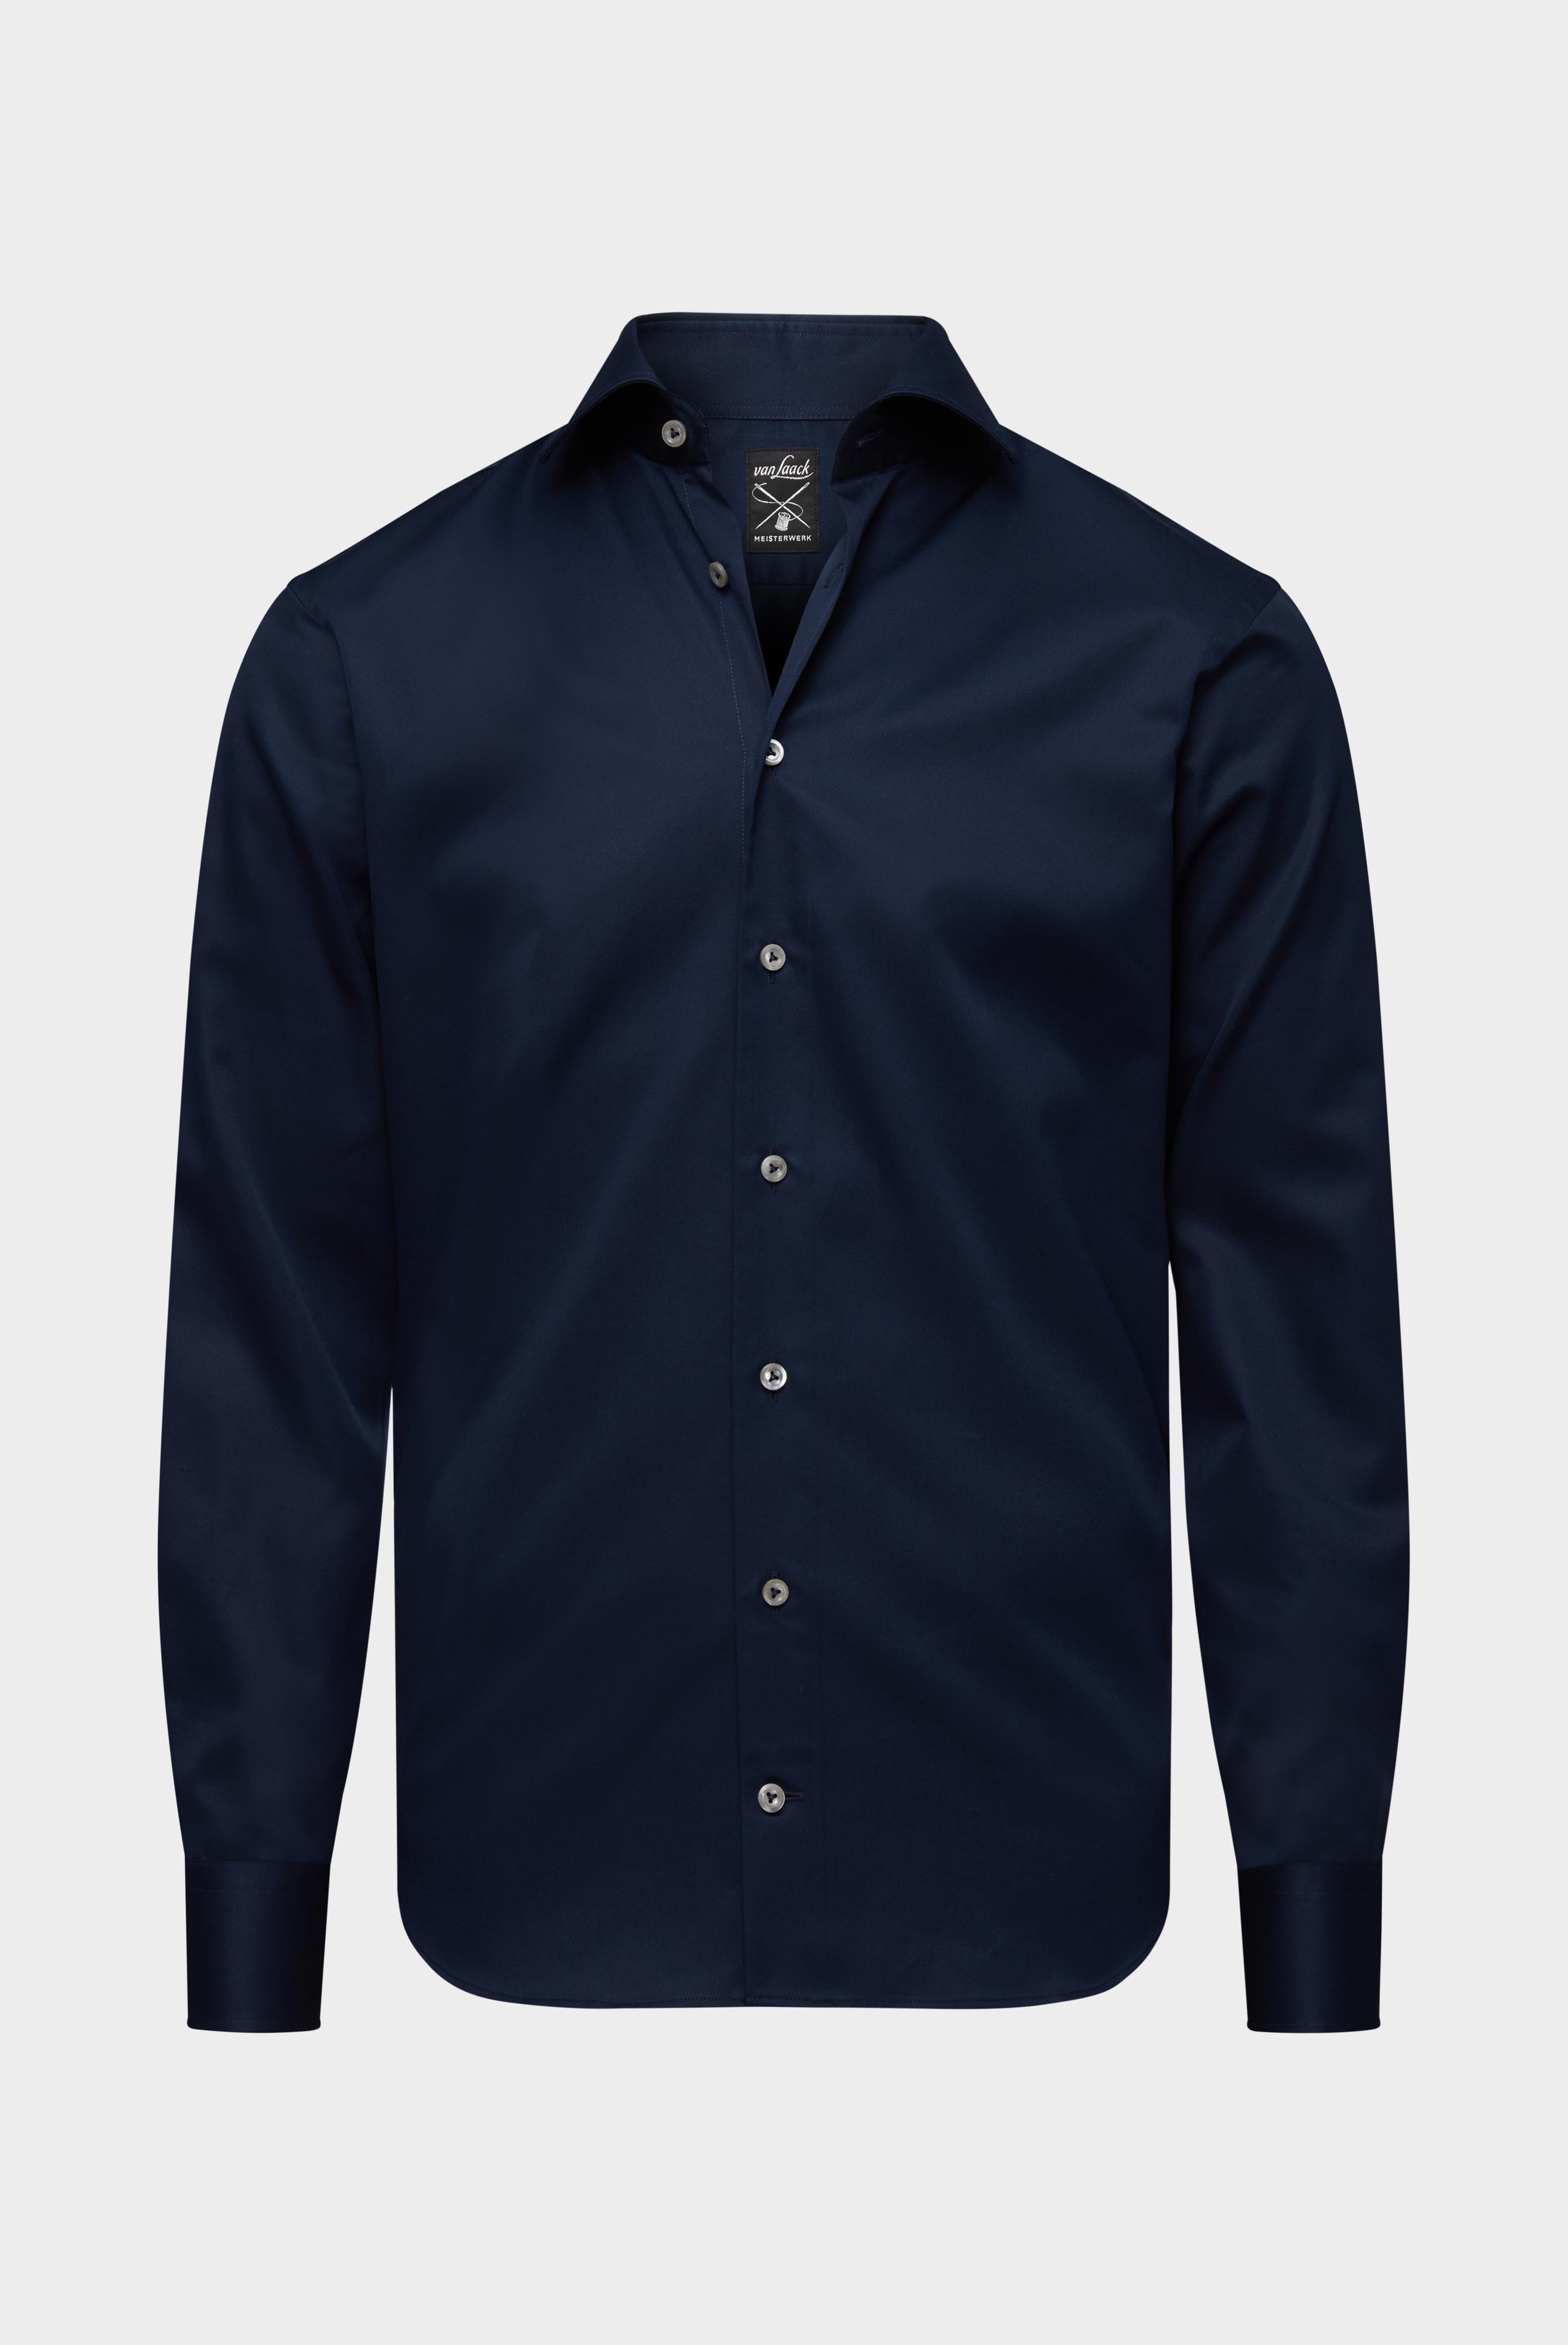 Bügelleichte Hemden+Bügelfreies Twill Hemd Tailor Fit+20.2020.BQ.132241.785.37